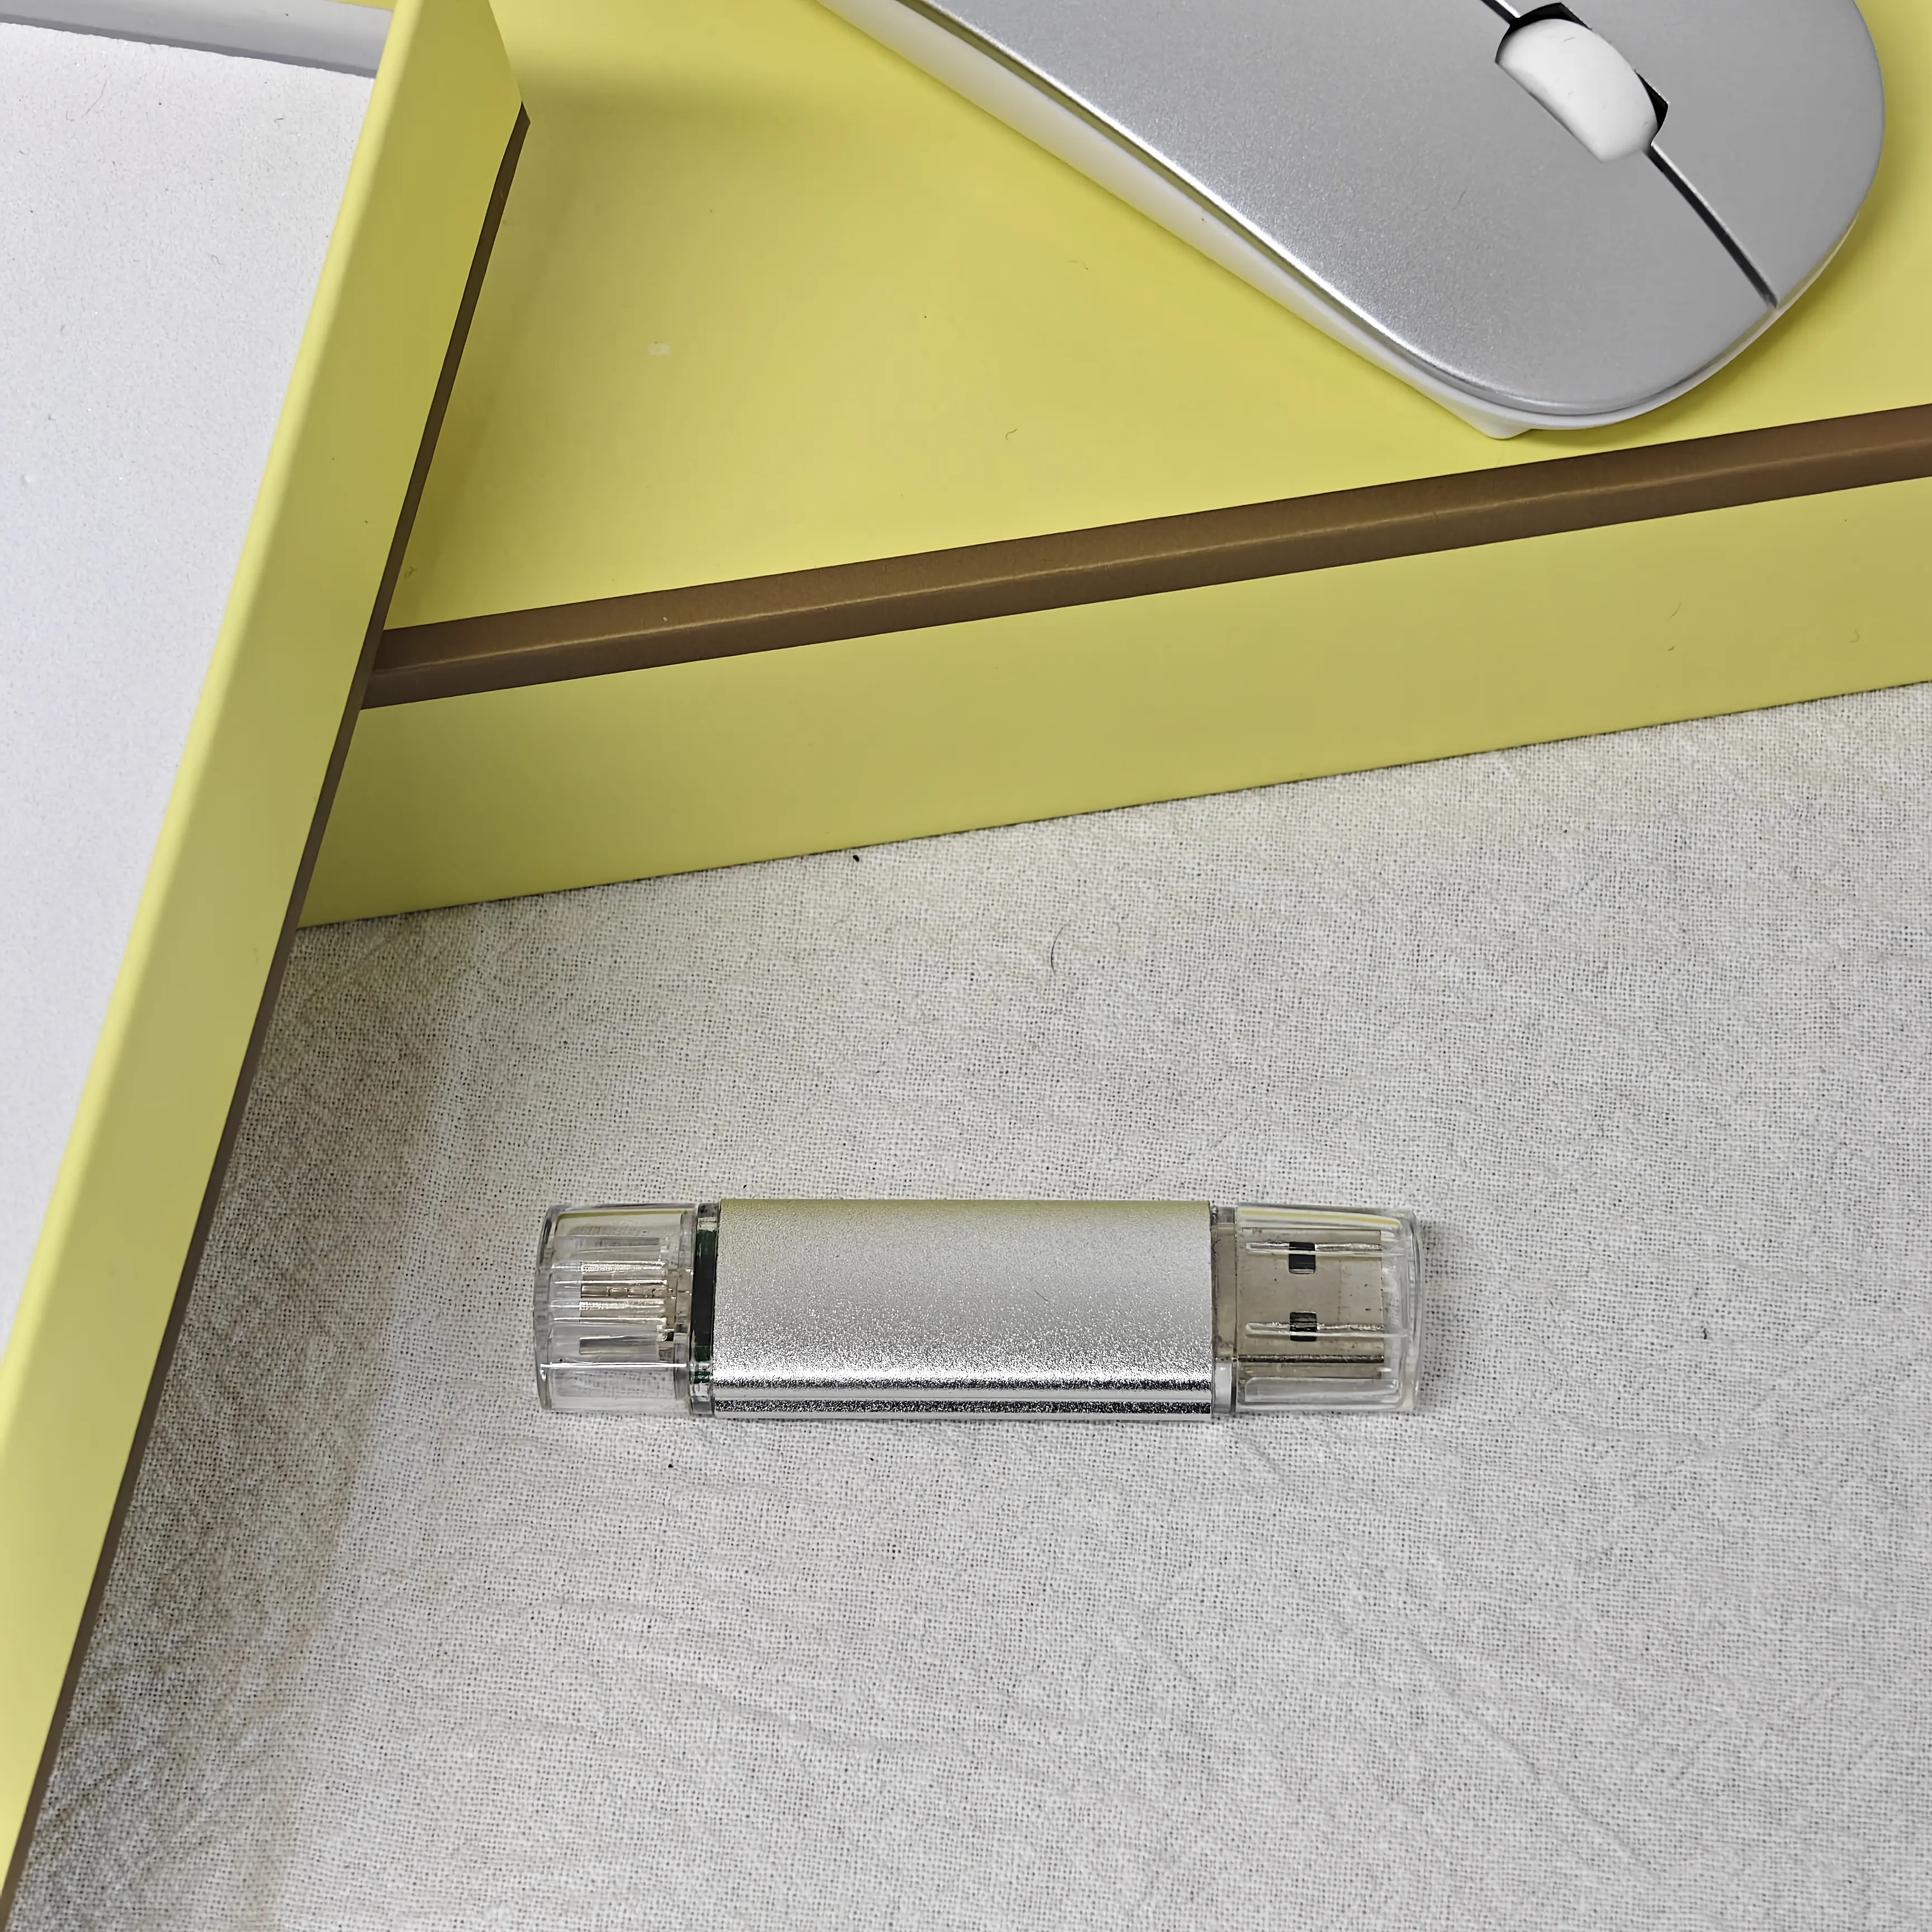 עכבר אלחוטי Boce עט כונן הבזק מסוג USB 3 ב-1 מבצעים יוקרתיים מותאמים אישית ופריטים עסקיים ערכות מתנות לחברות